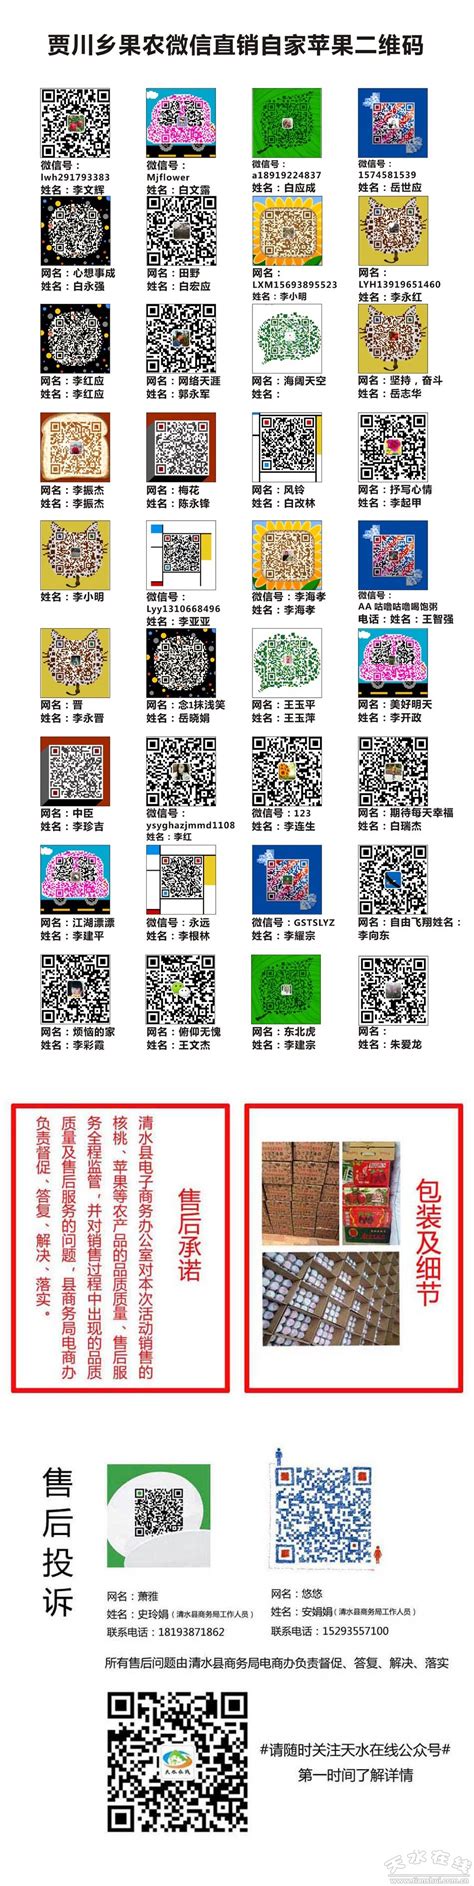 天水在线发布清水县贾川乡果农微信直销苹果二维码(图)--天水在线